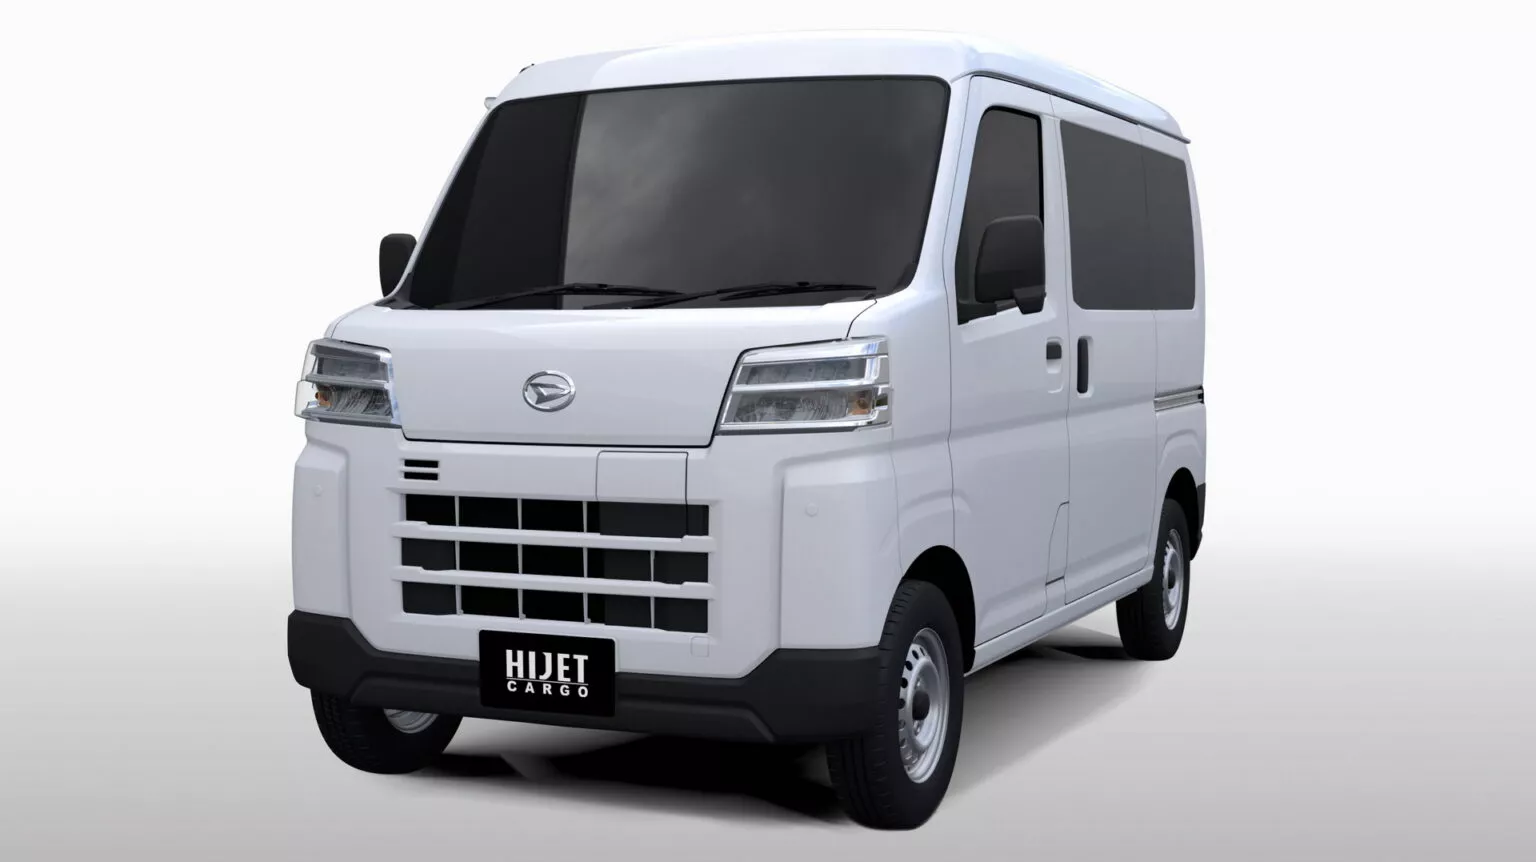 Daihatsu Hijet Cargo BEV 1536x862 1